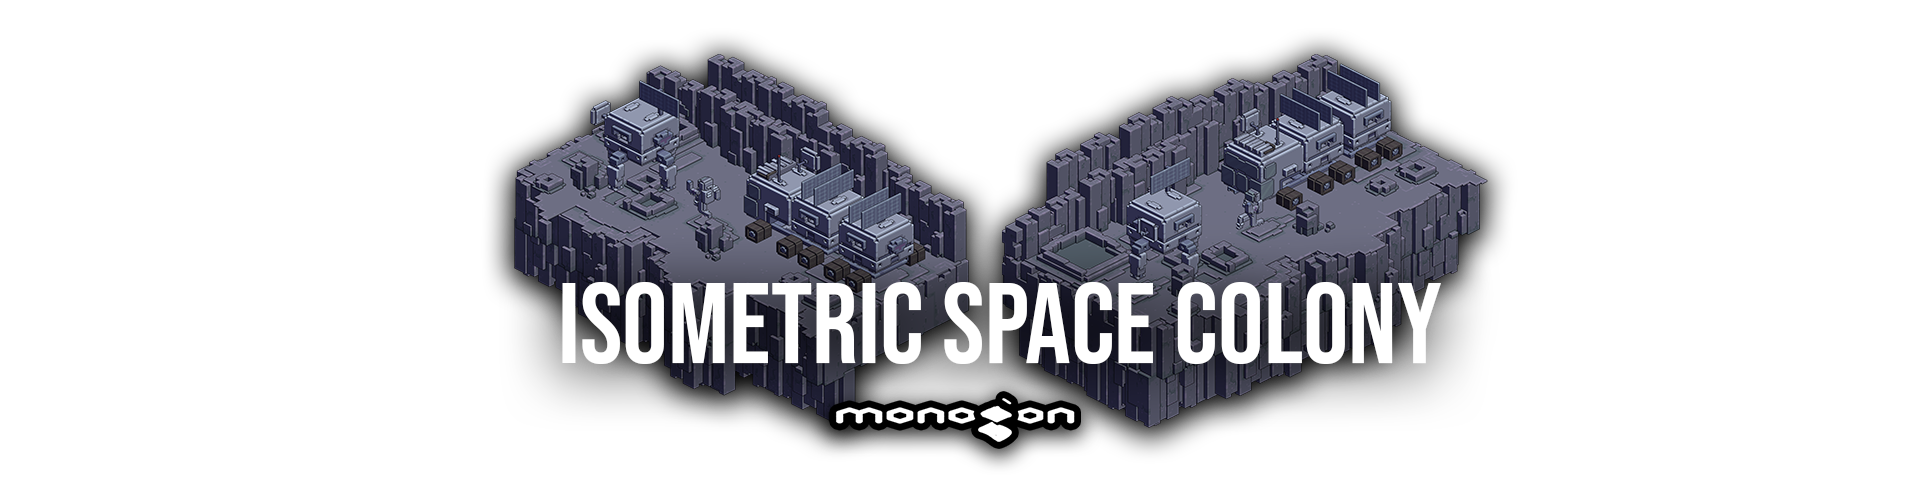 Isometric Space Colony - monogon